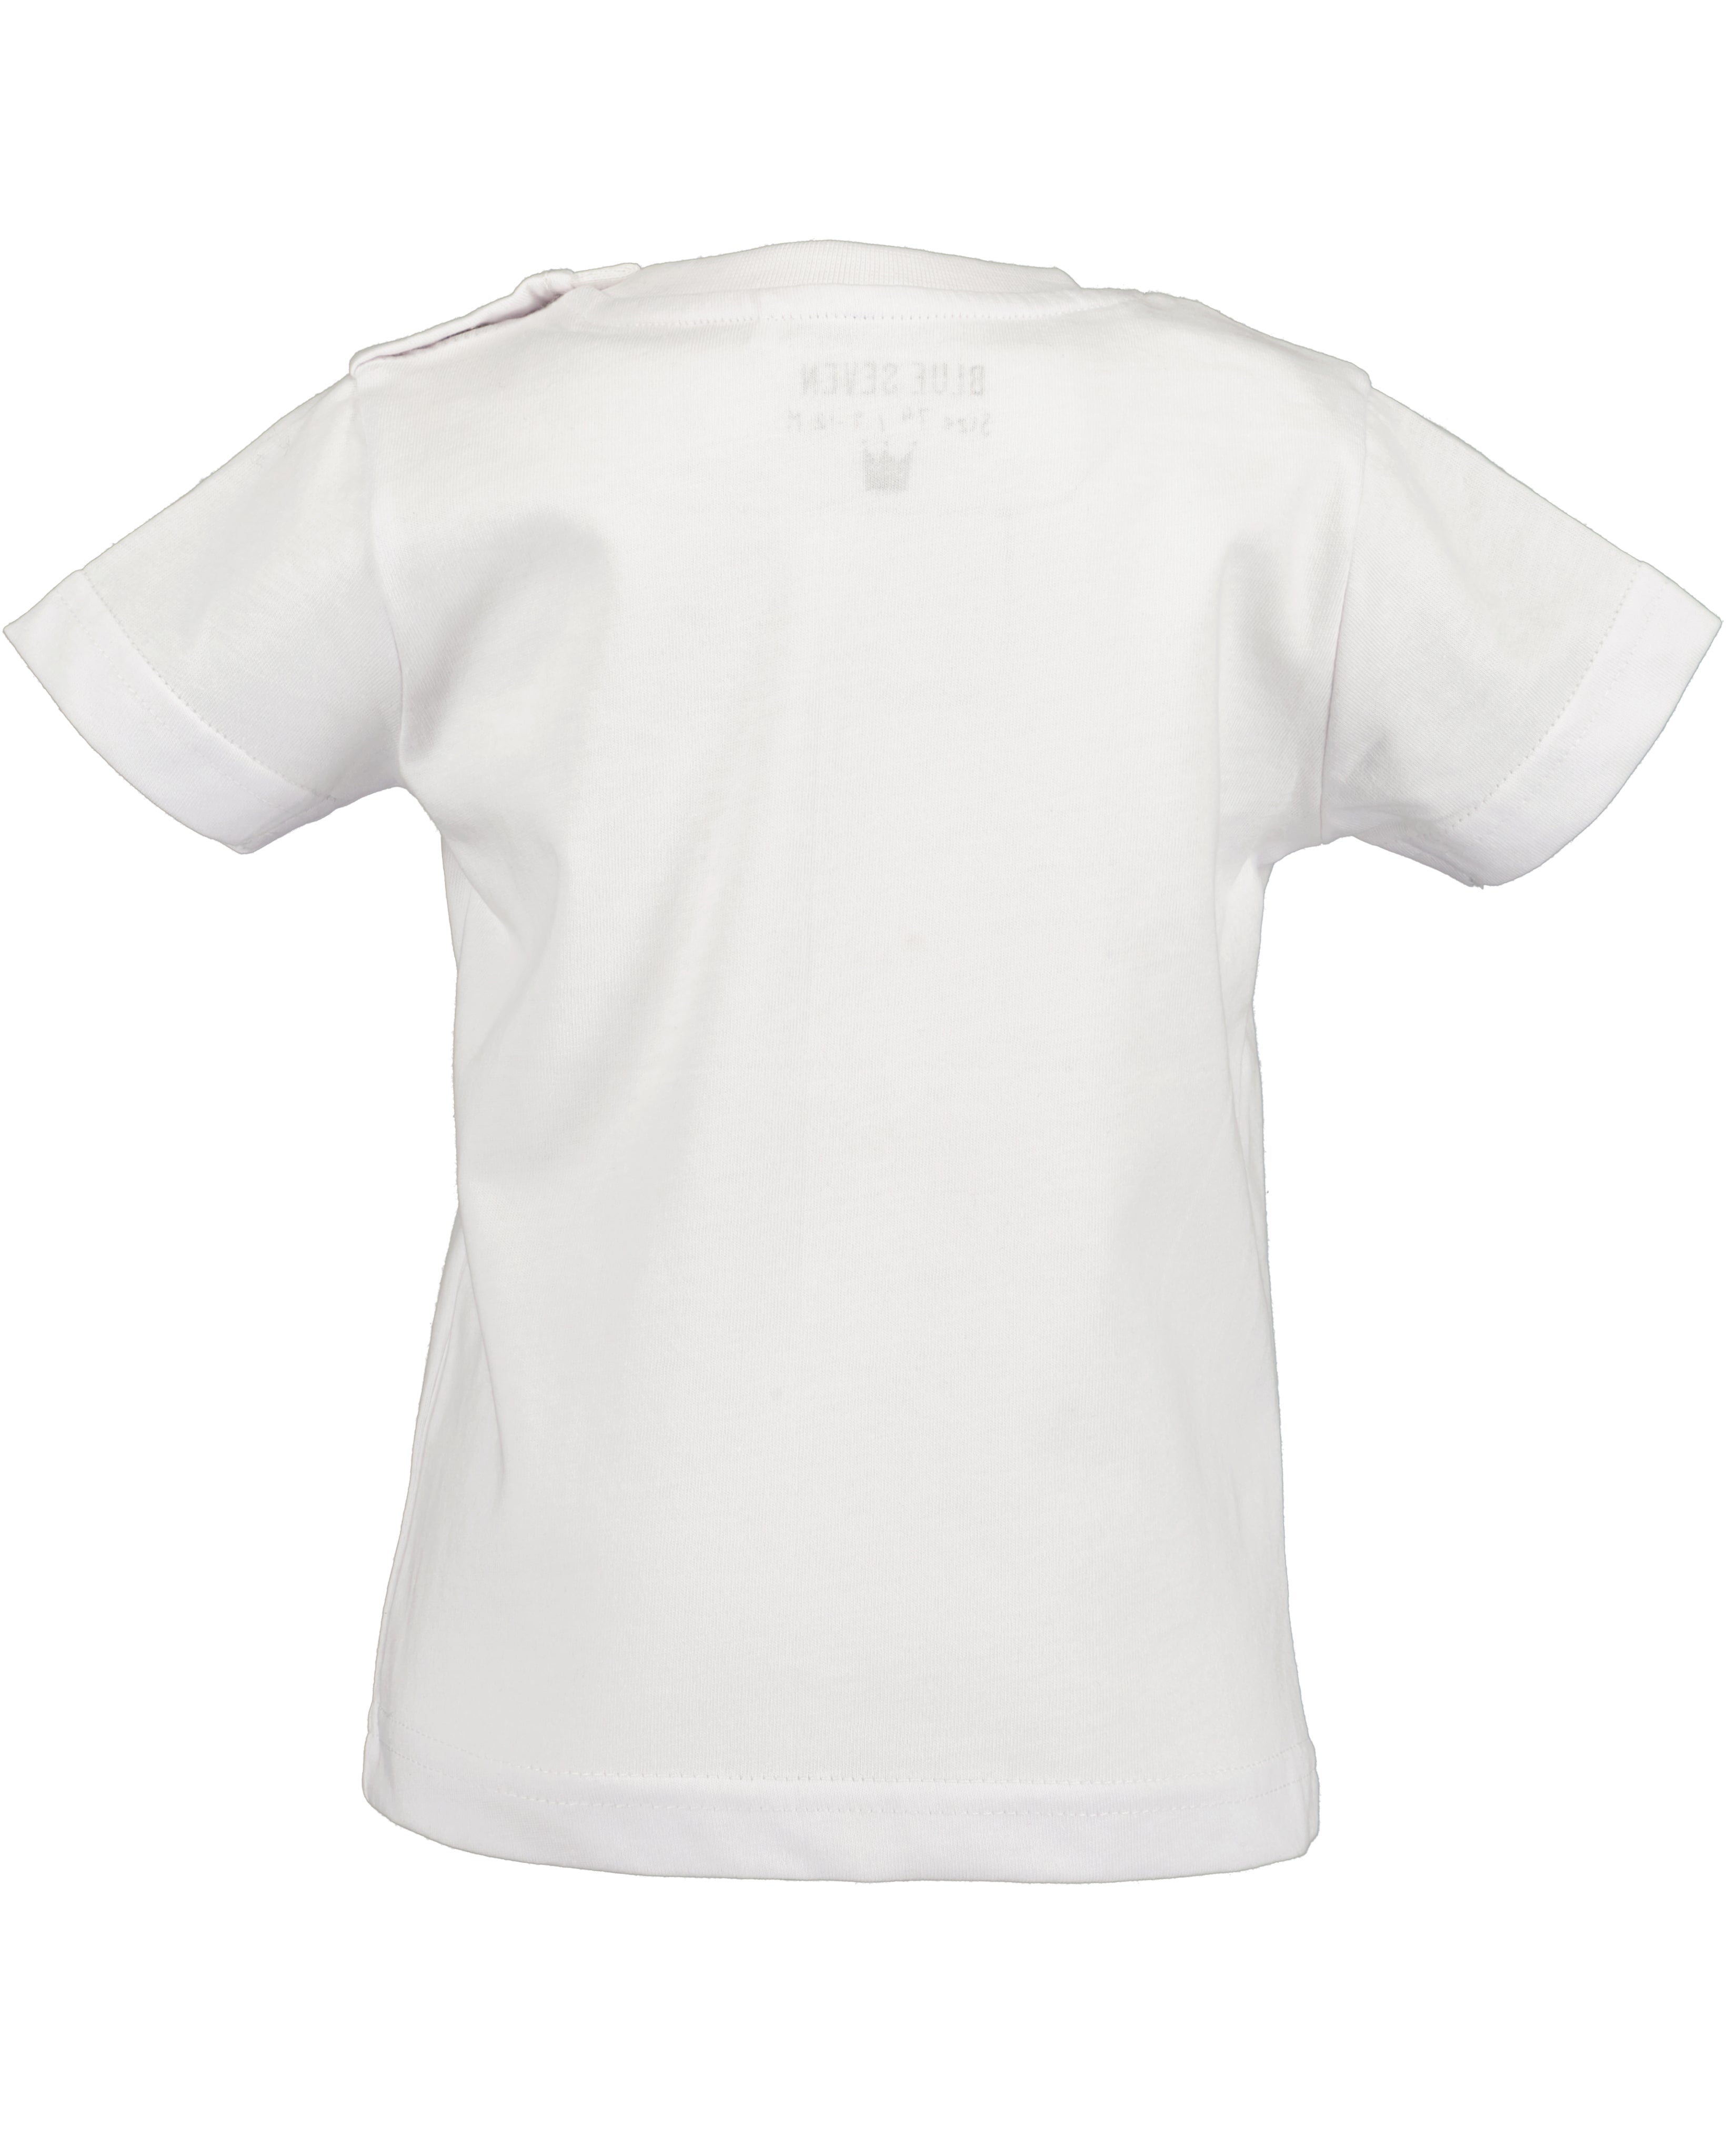 White Whale T-Shirt